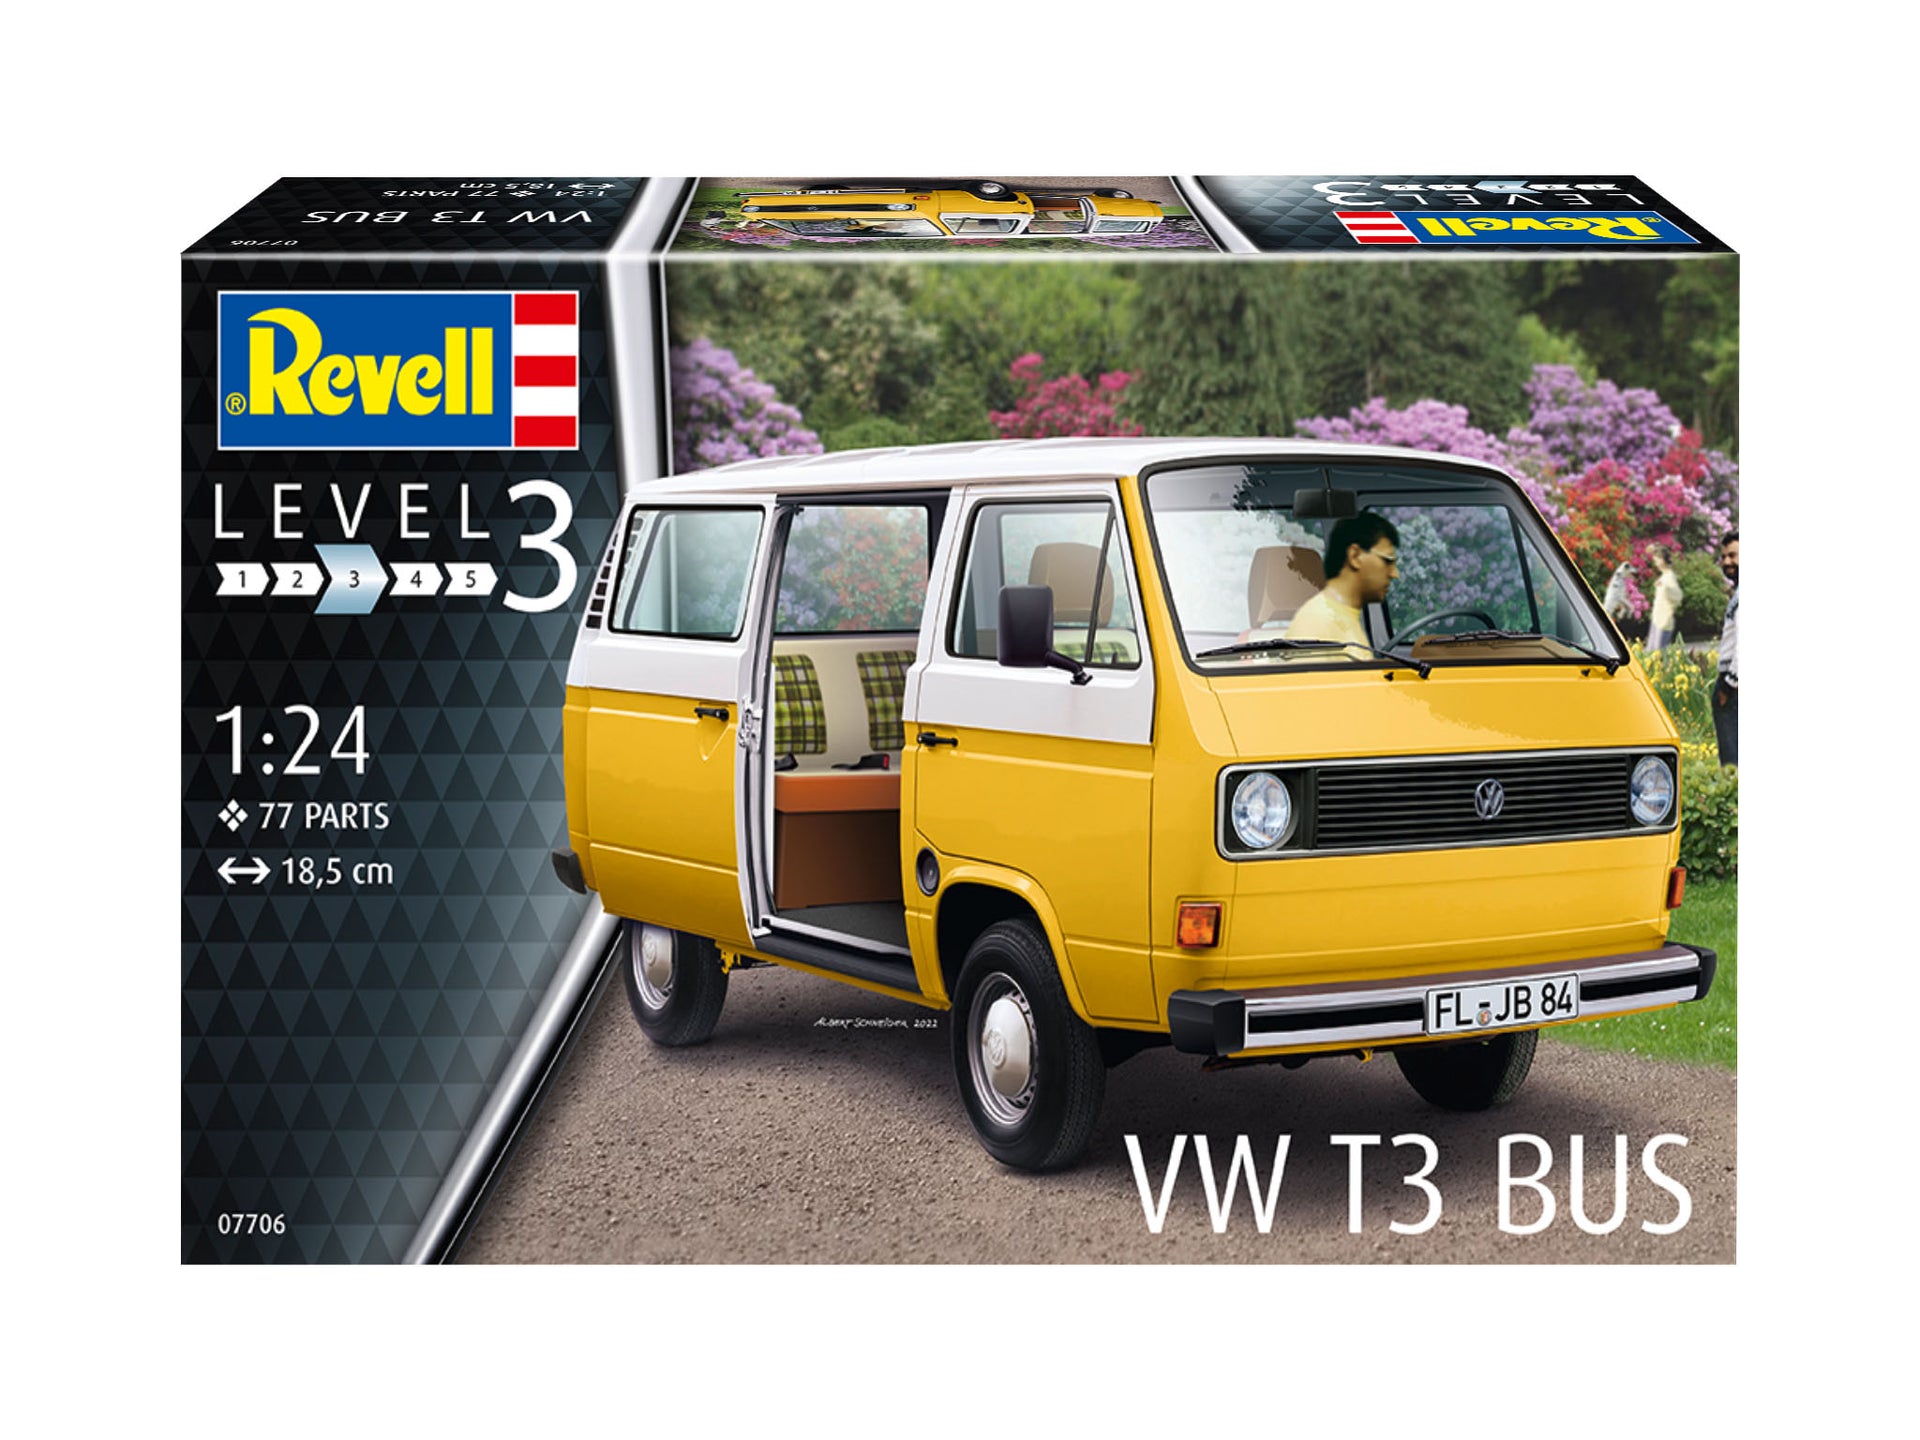 Revell Monogram Germany 07706 VW T3 Bus 1:25